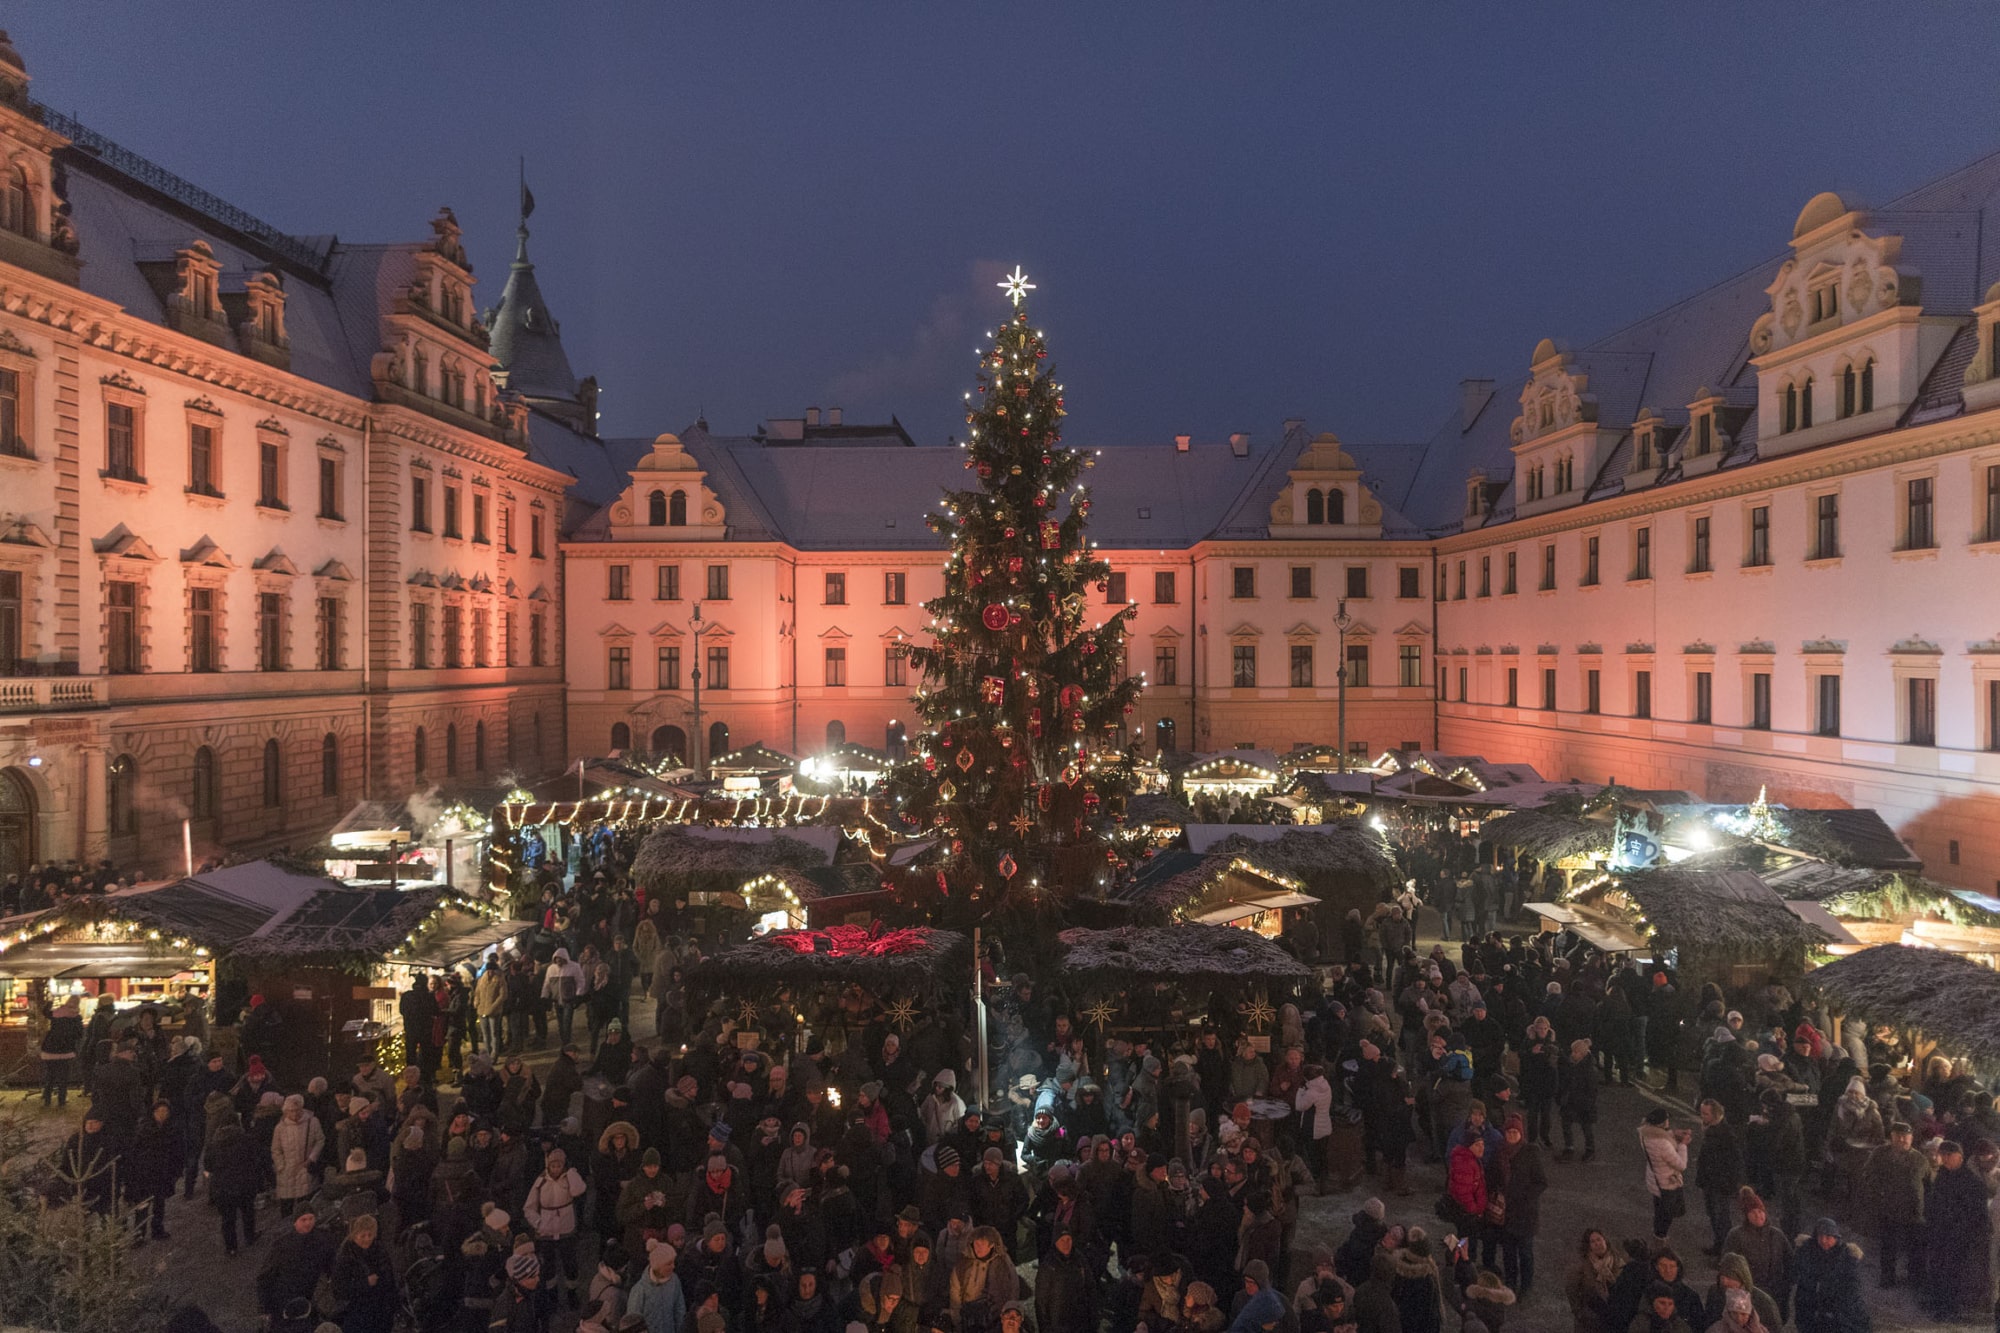 Weihnachtsmarkt_Schlossinnenhof ©Uwe Moosburger